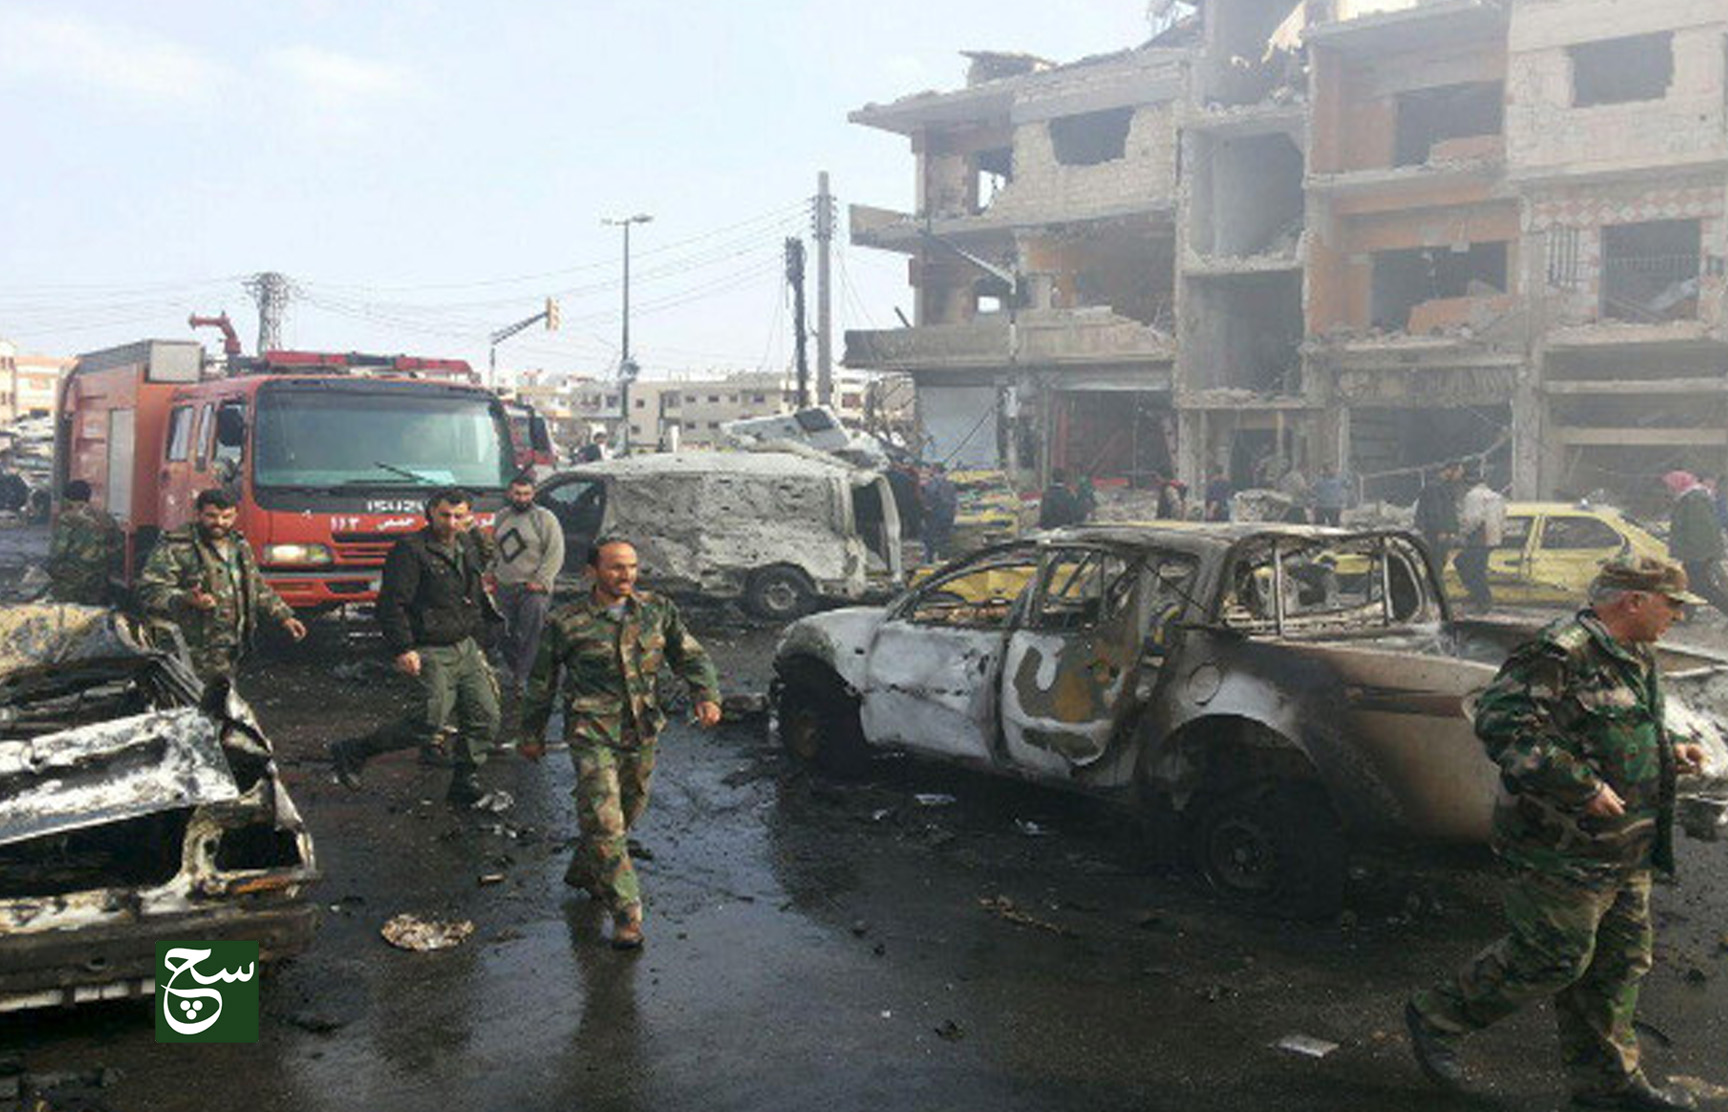 استشهاد 10  أشخاص بينهم ضابط أمن كبير في هجمات انتحارية على مراكز أمنية في مدينة حمص السورية